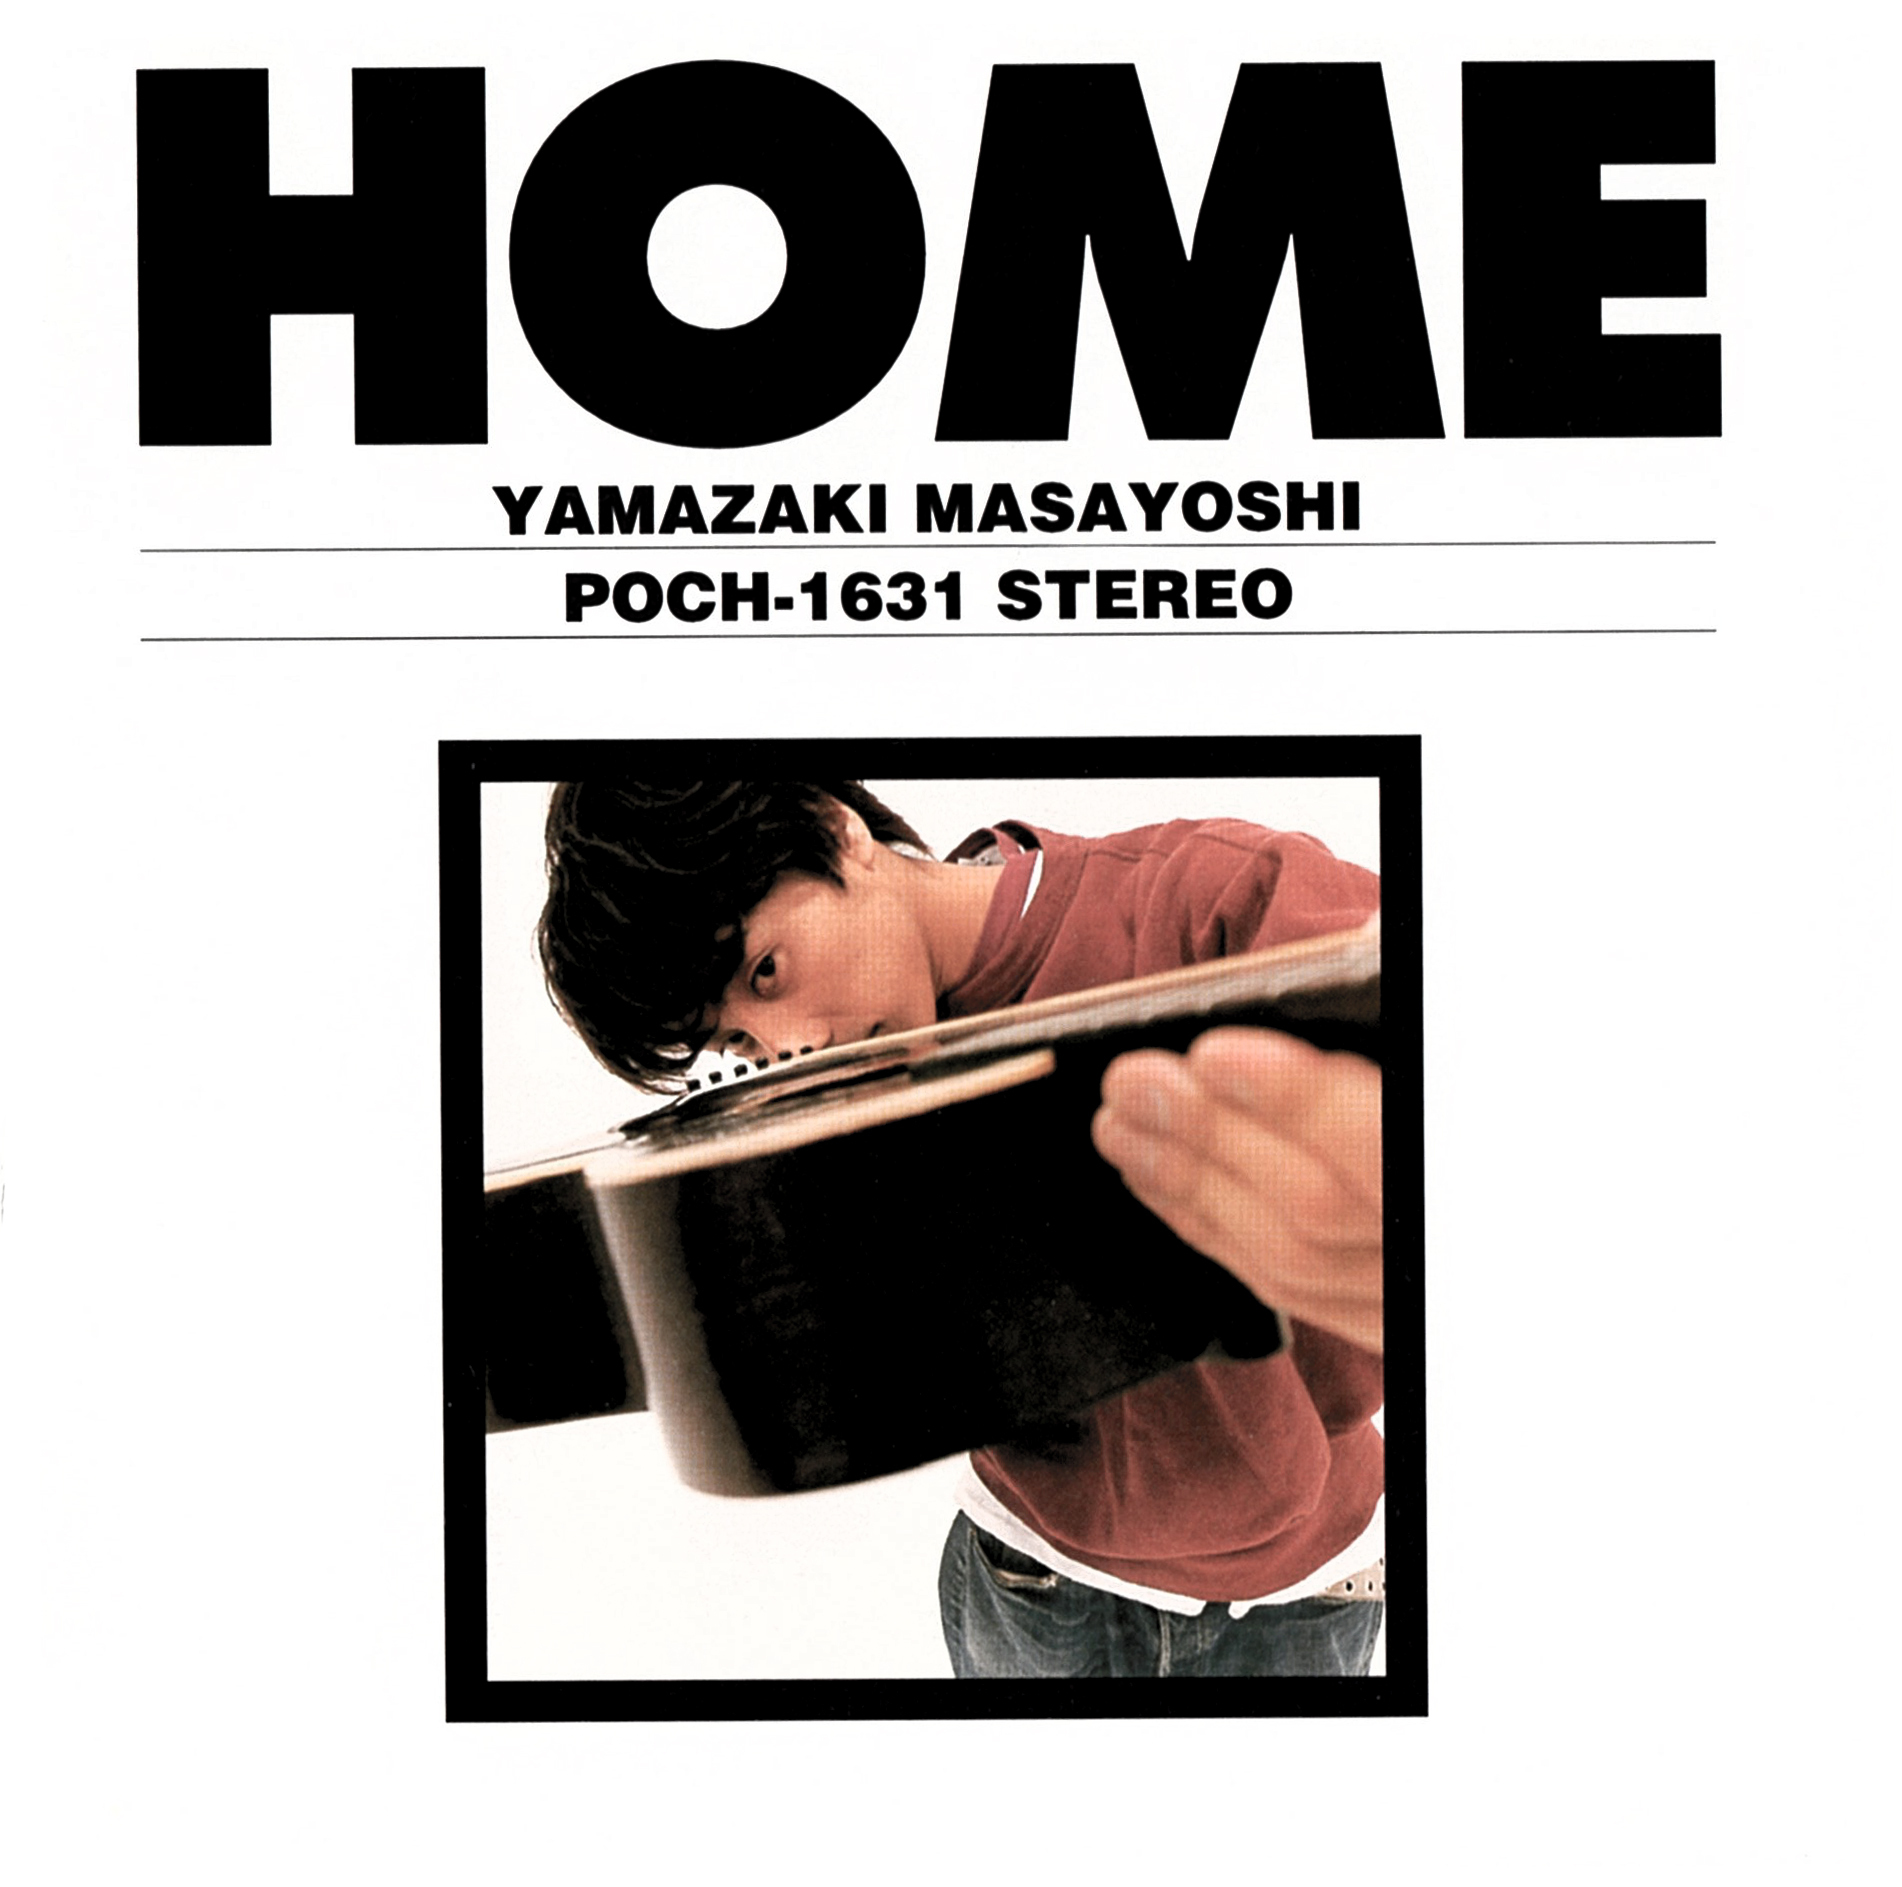 山崎まさよし (やまざきまさよし) 2ndアルバム『HOME』(1997年5月21日発売) 高画質CDジャケット画像 (ジャケ写)